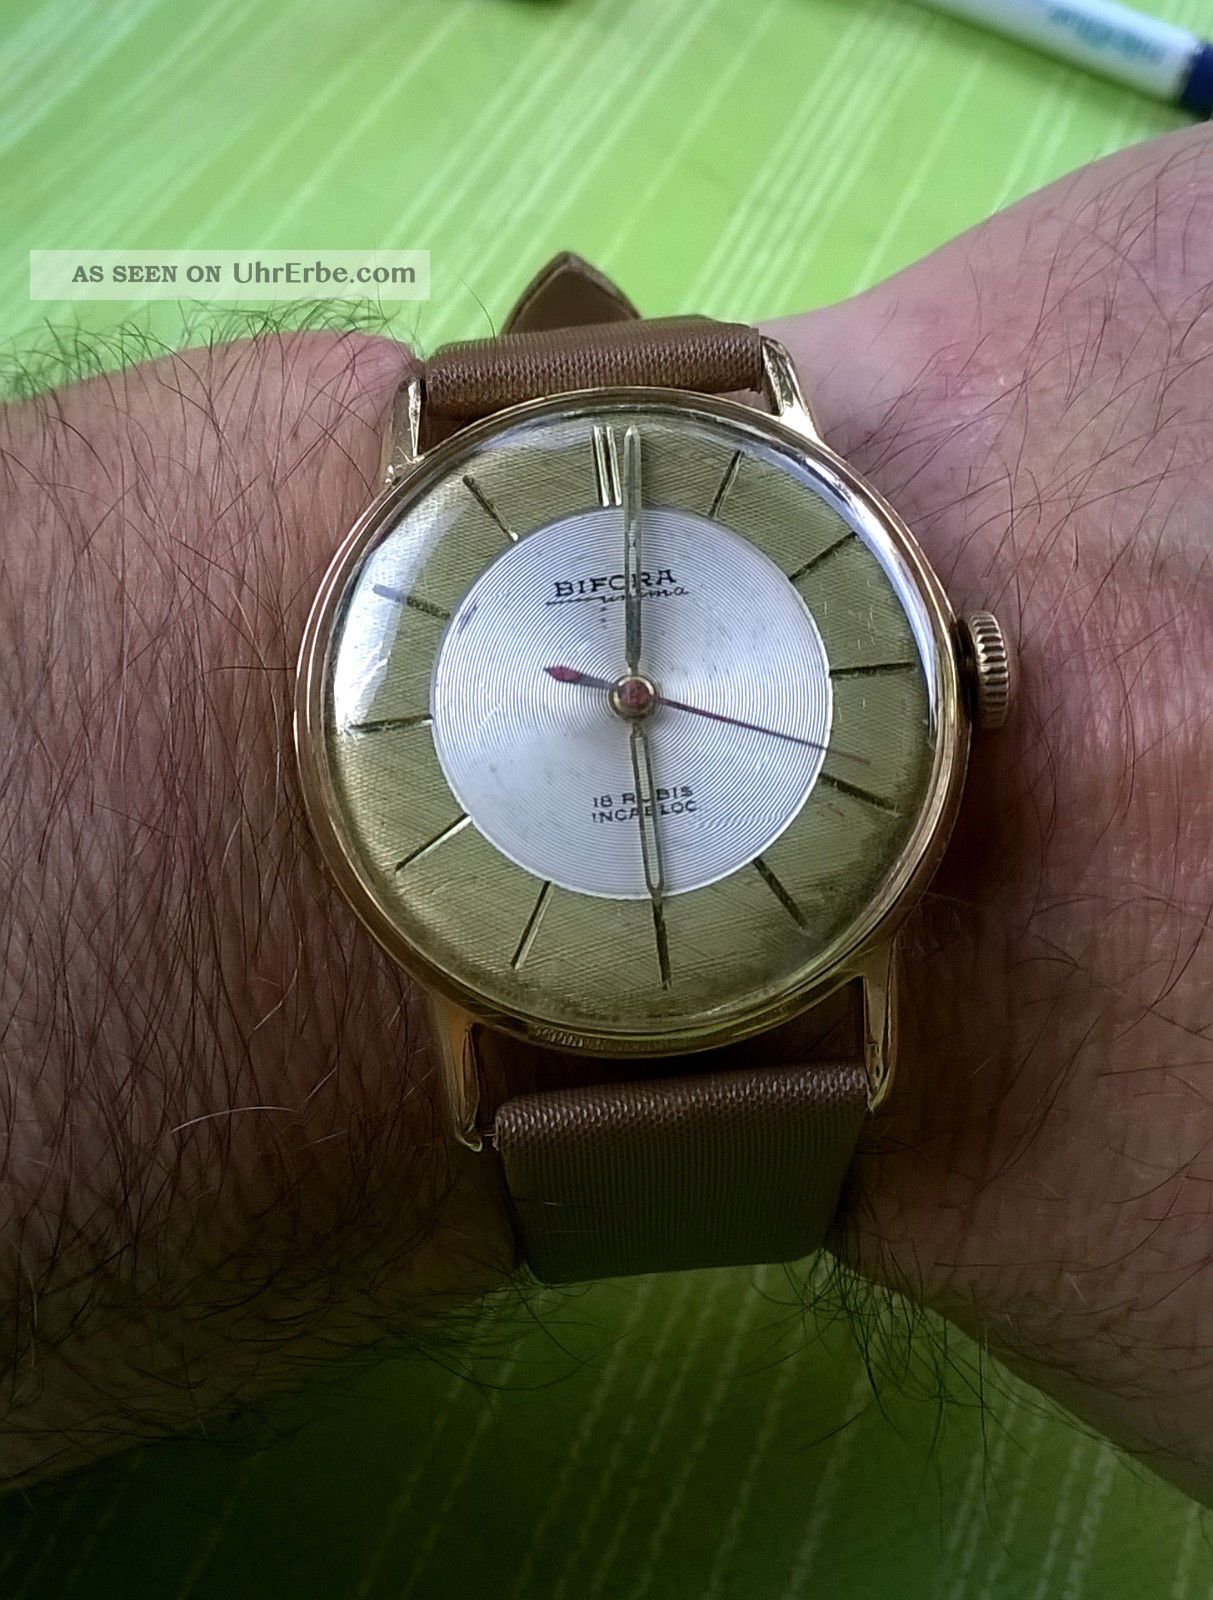 Hau Bifora Unima,  Kaliber 120,  60erjahre,  Handaufzug,  Vintage, Armbanduhren Bild